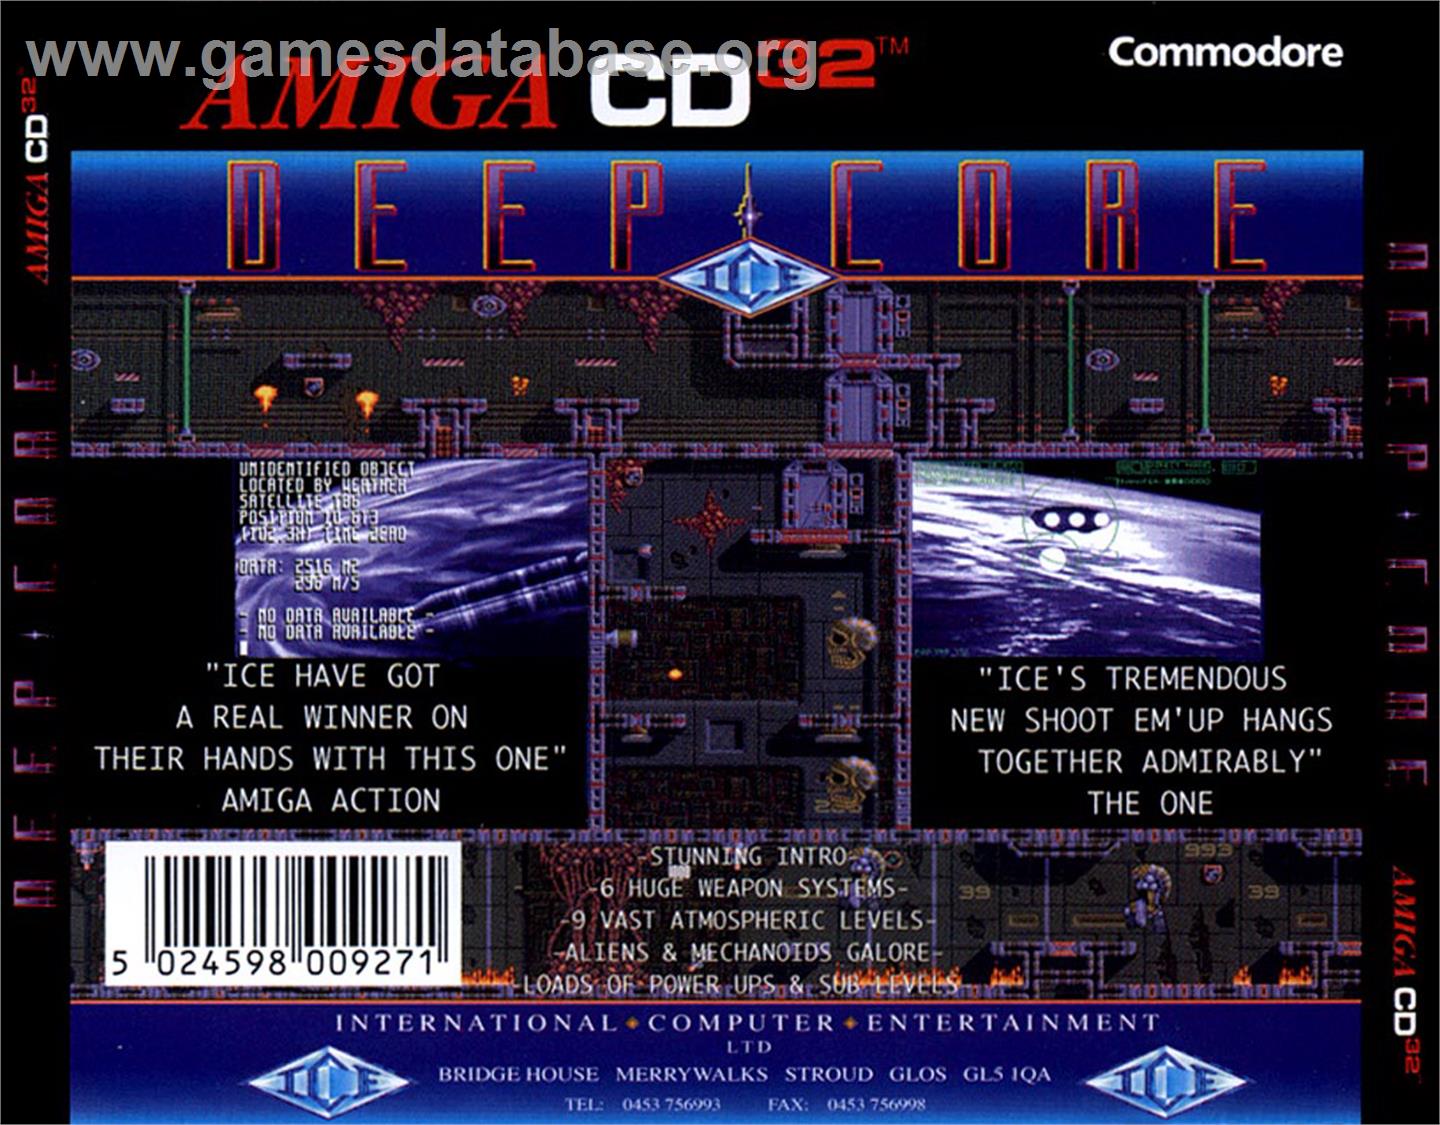 Deep Core - Commodore Amiga CD32 - Artwork - Box Back